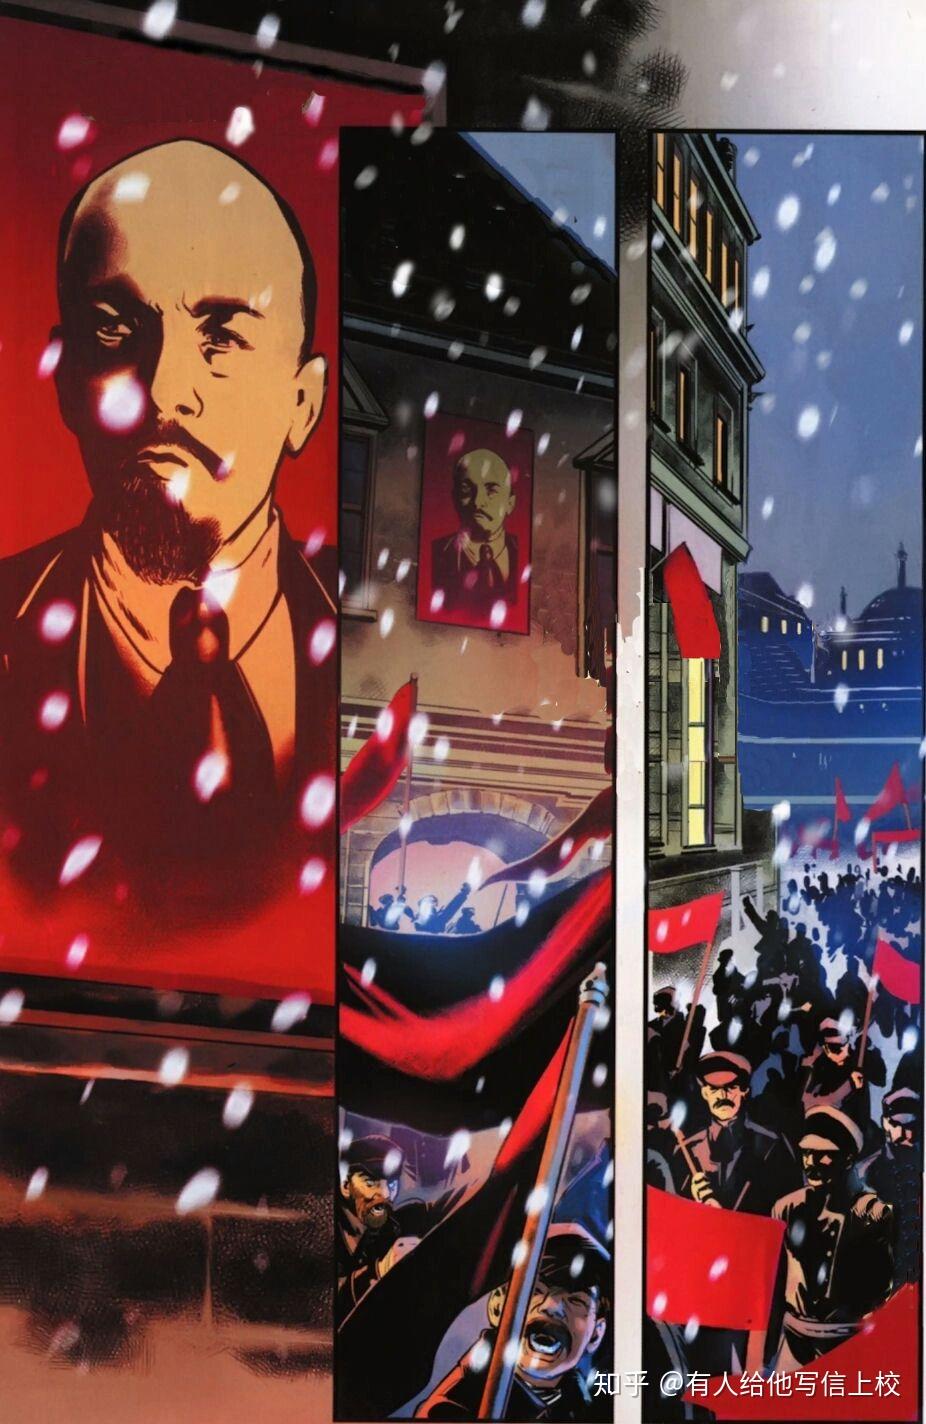 十月革命手机壁纸图片